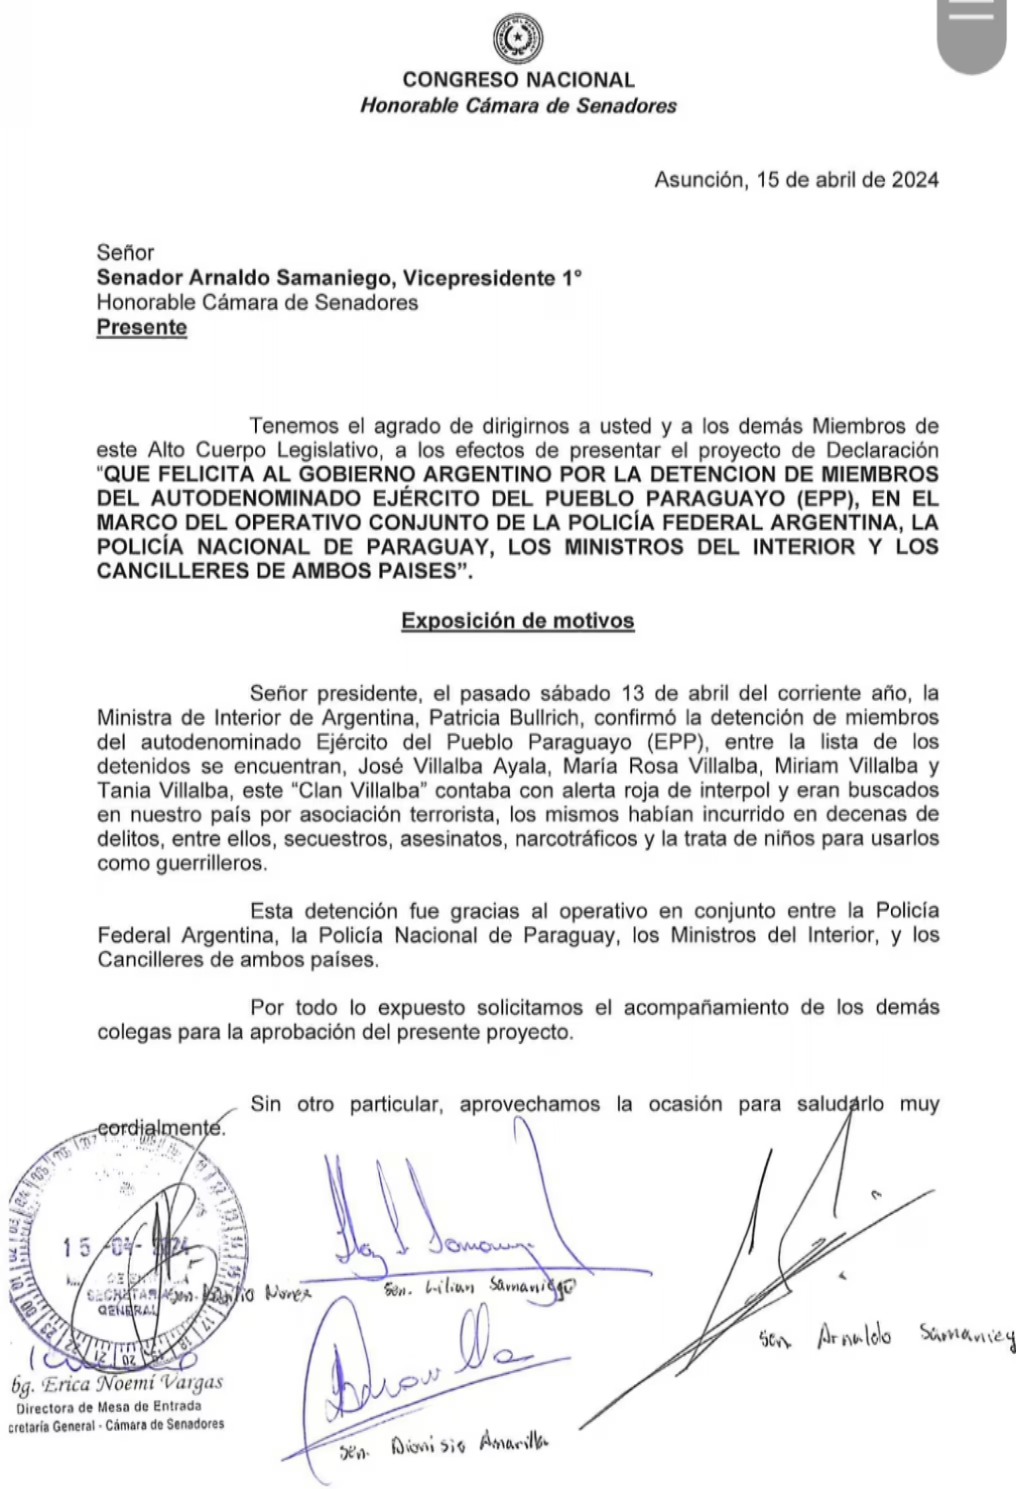 EPP en Argentina: Presentan declaración que felicita al gobierno del vecino país